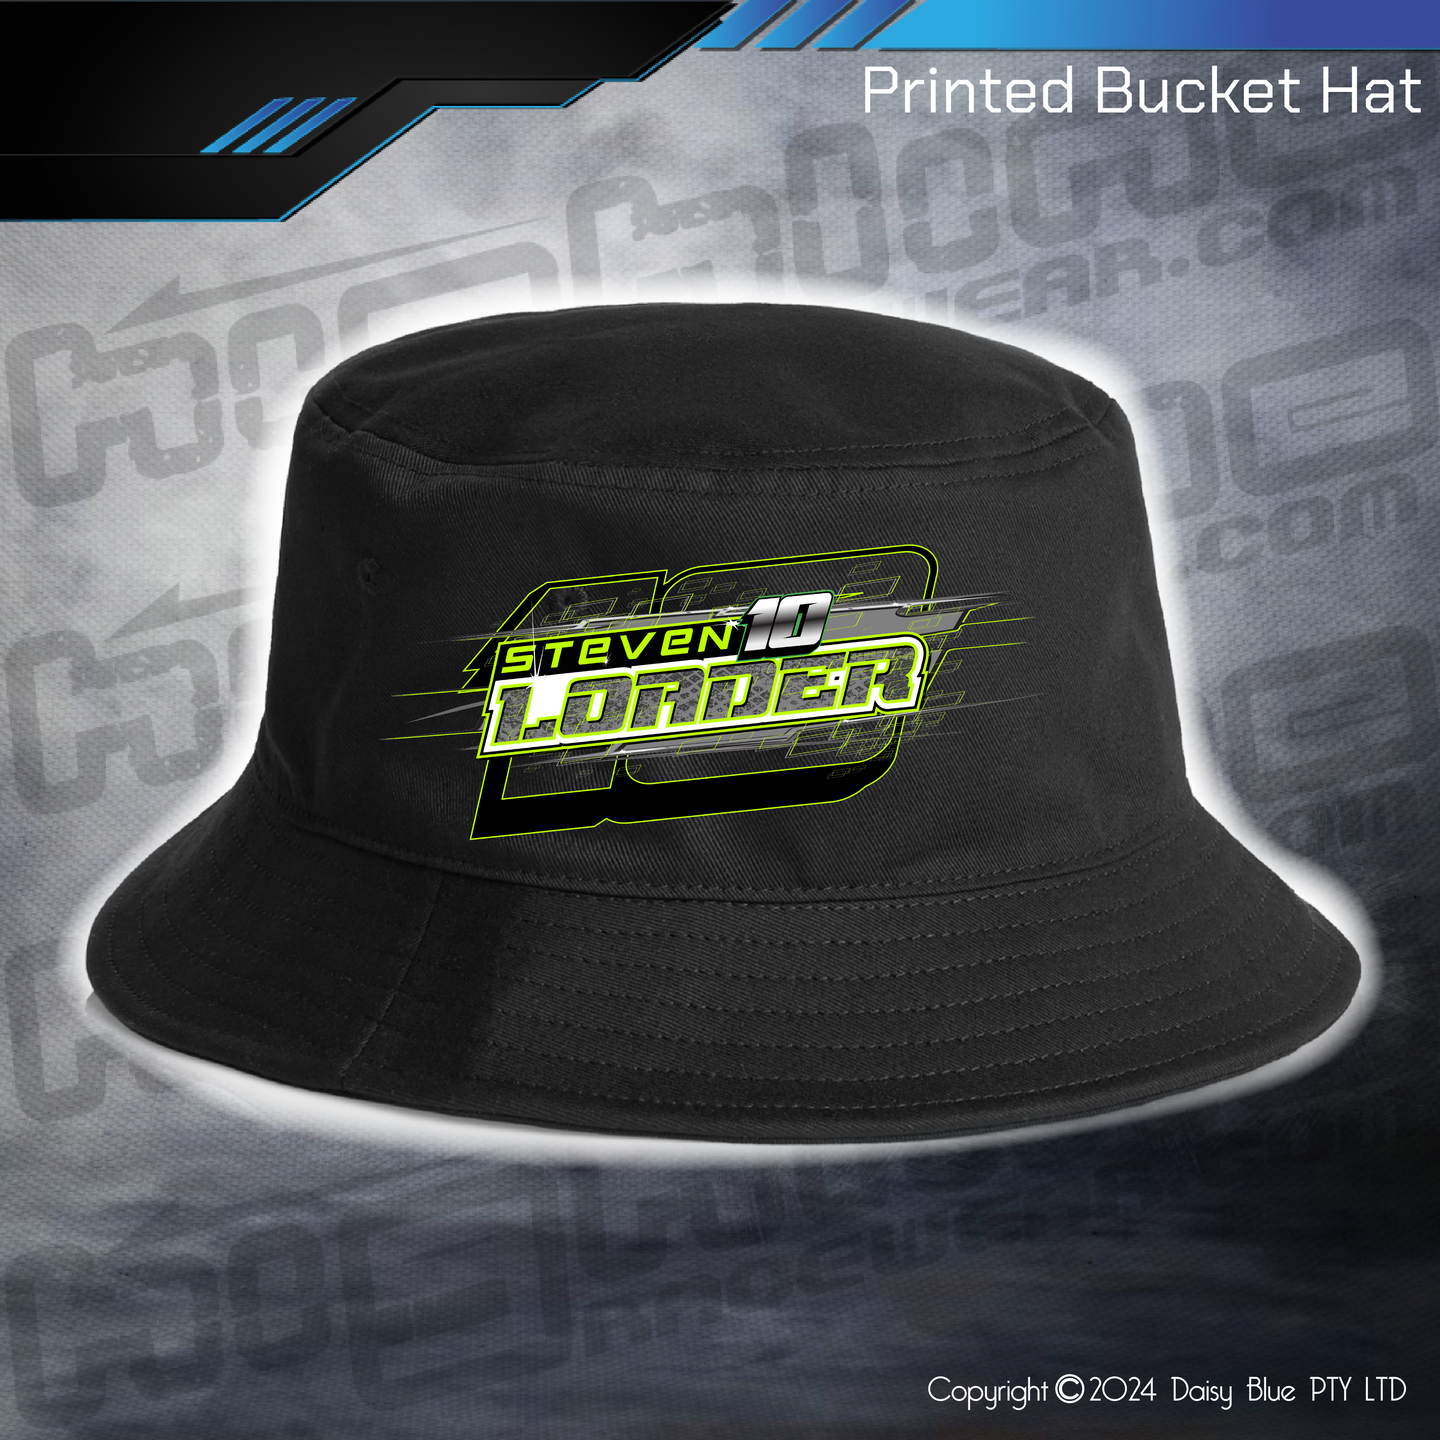 Printed Bucket Hat - Steve Loader Sports Sedan